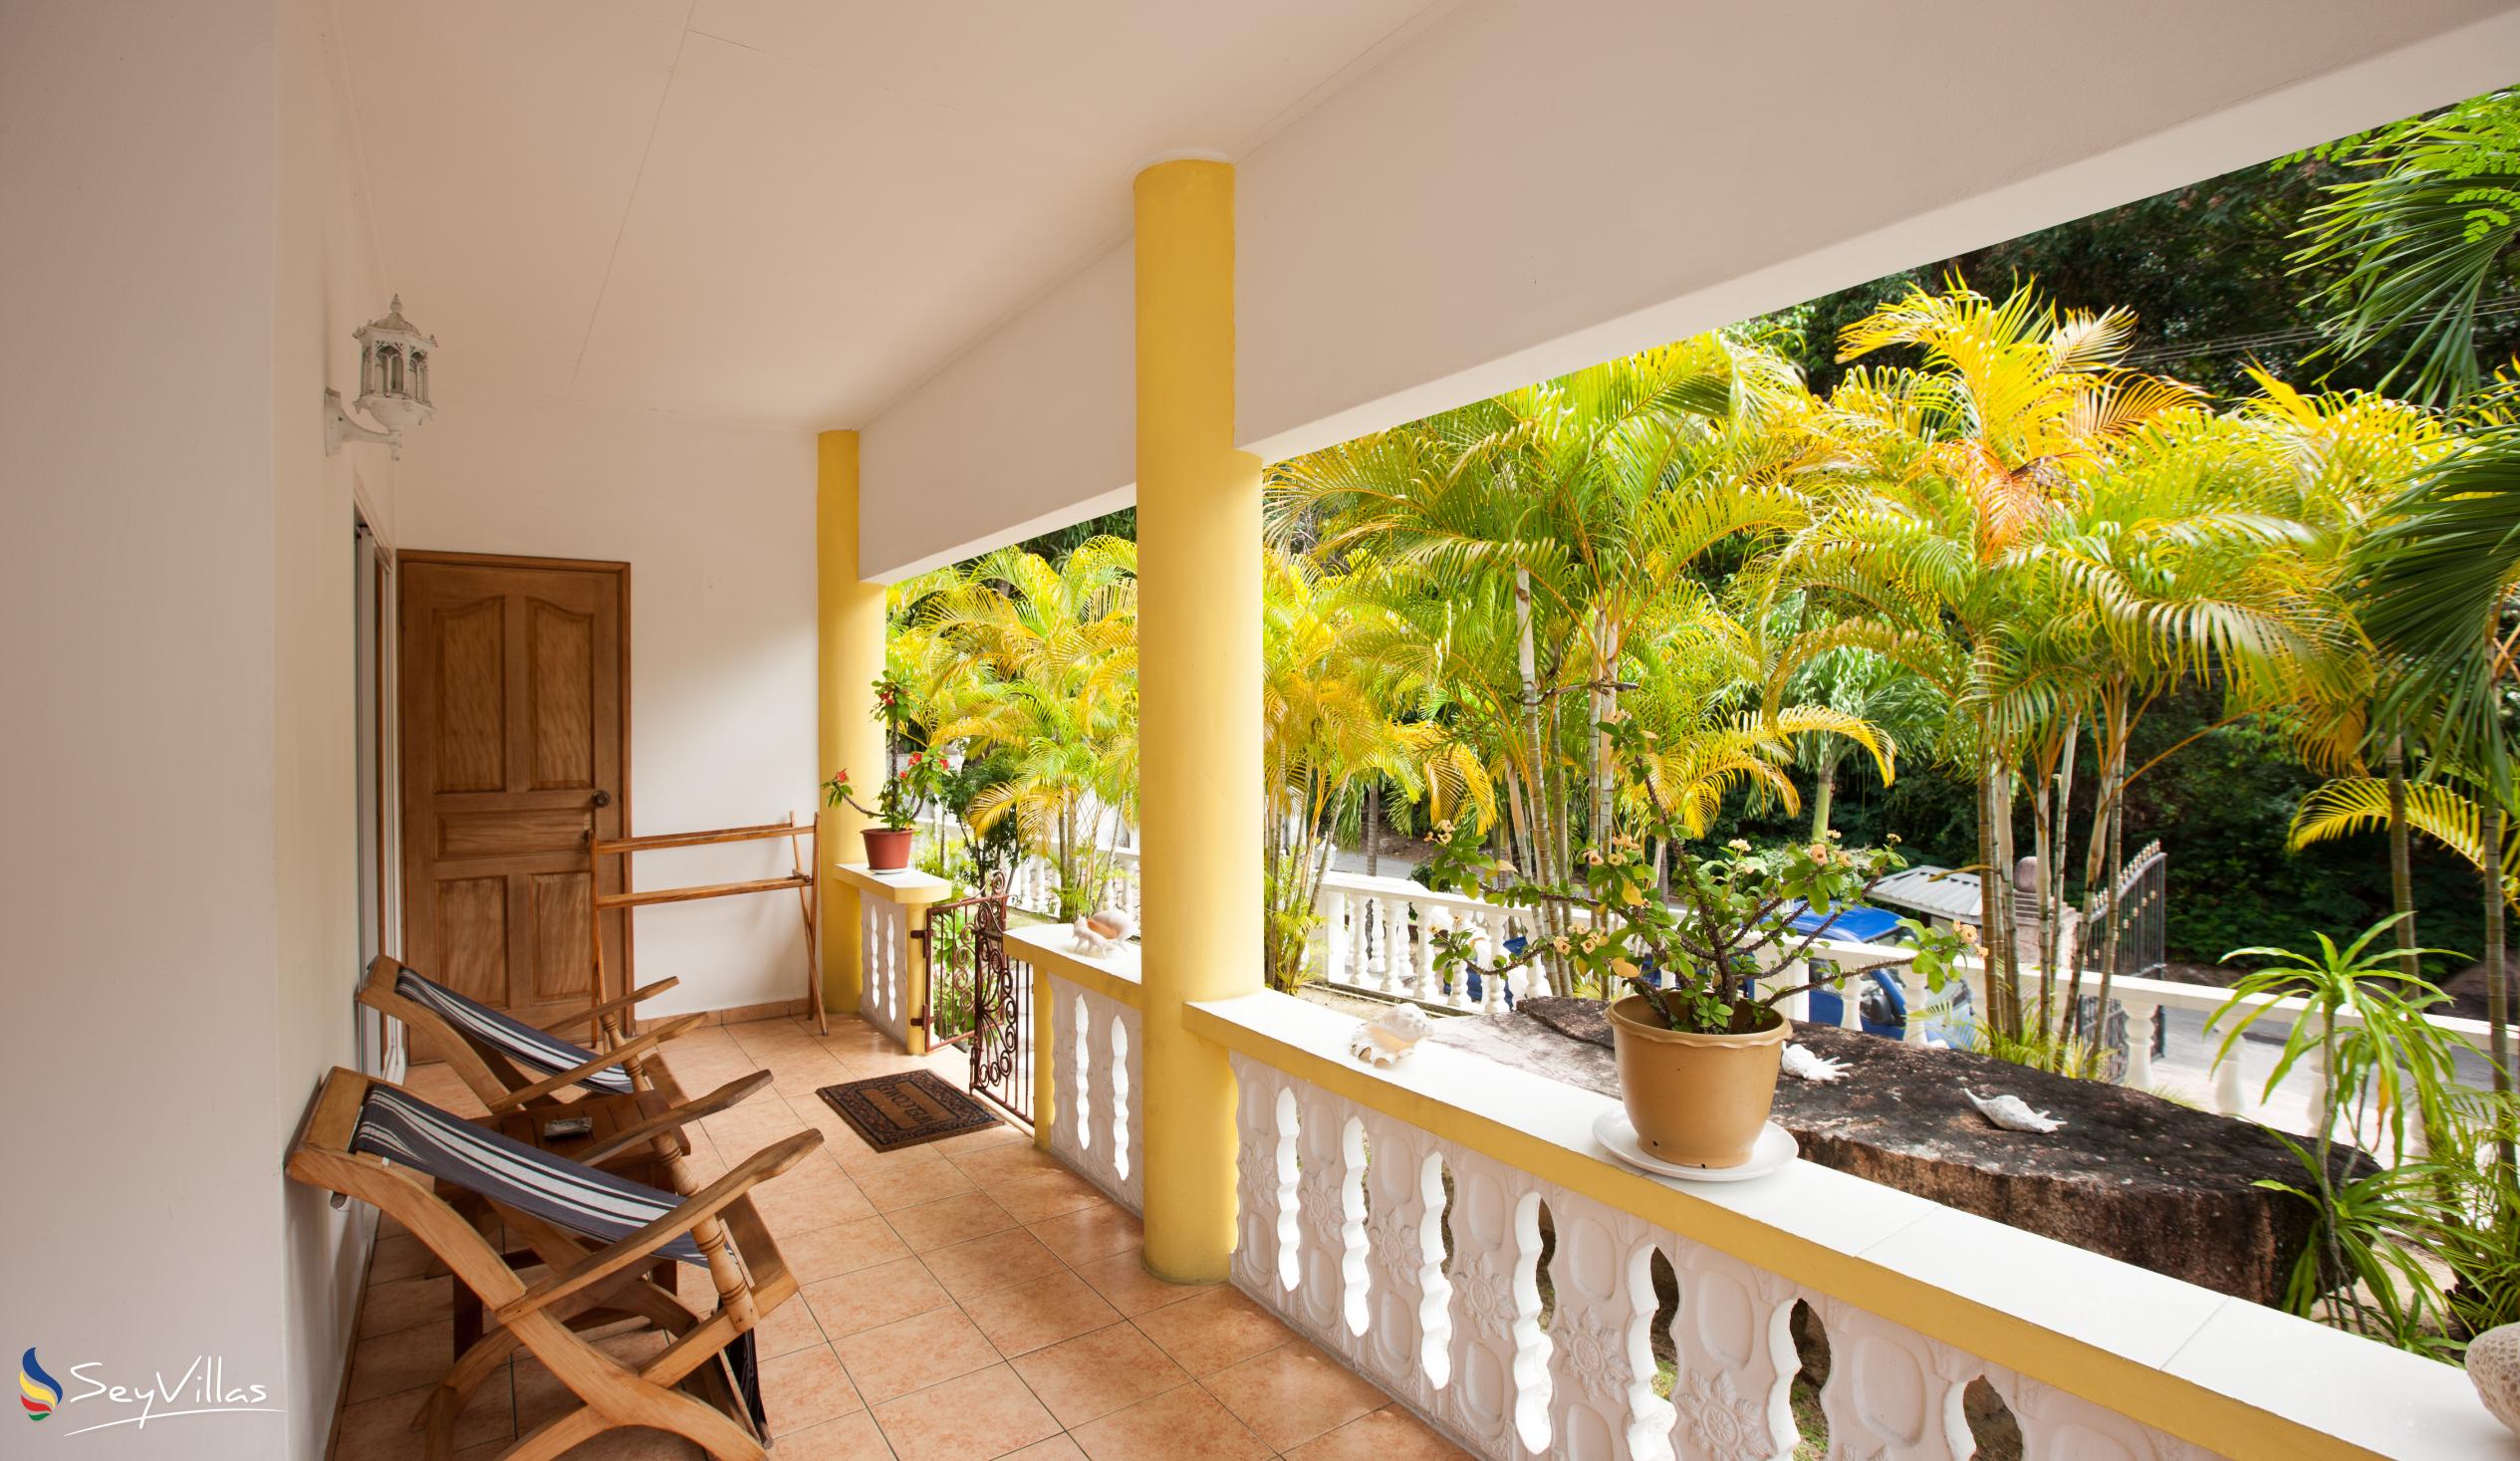 Foto 54: Acquario Villa - Appartement mit 1 Schlafzimmer - Praslin (Seychellen)